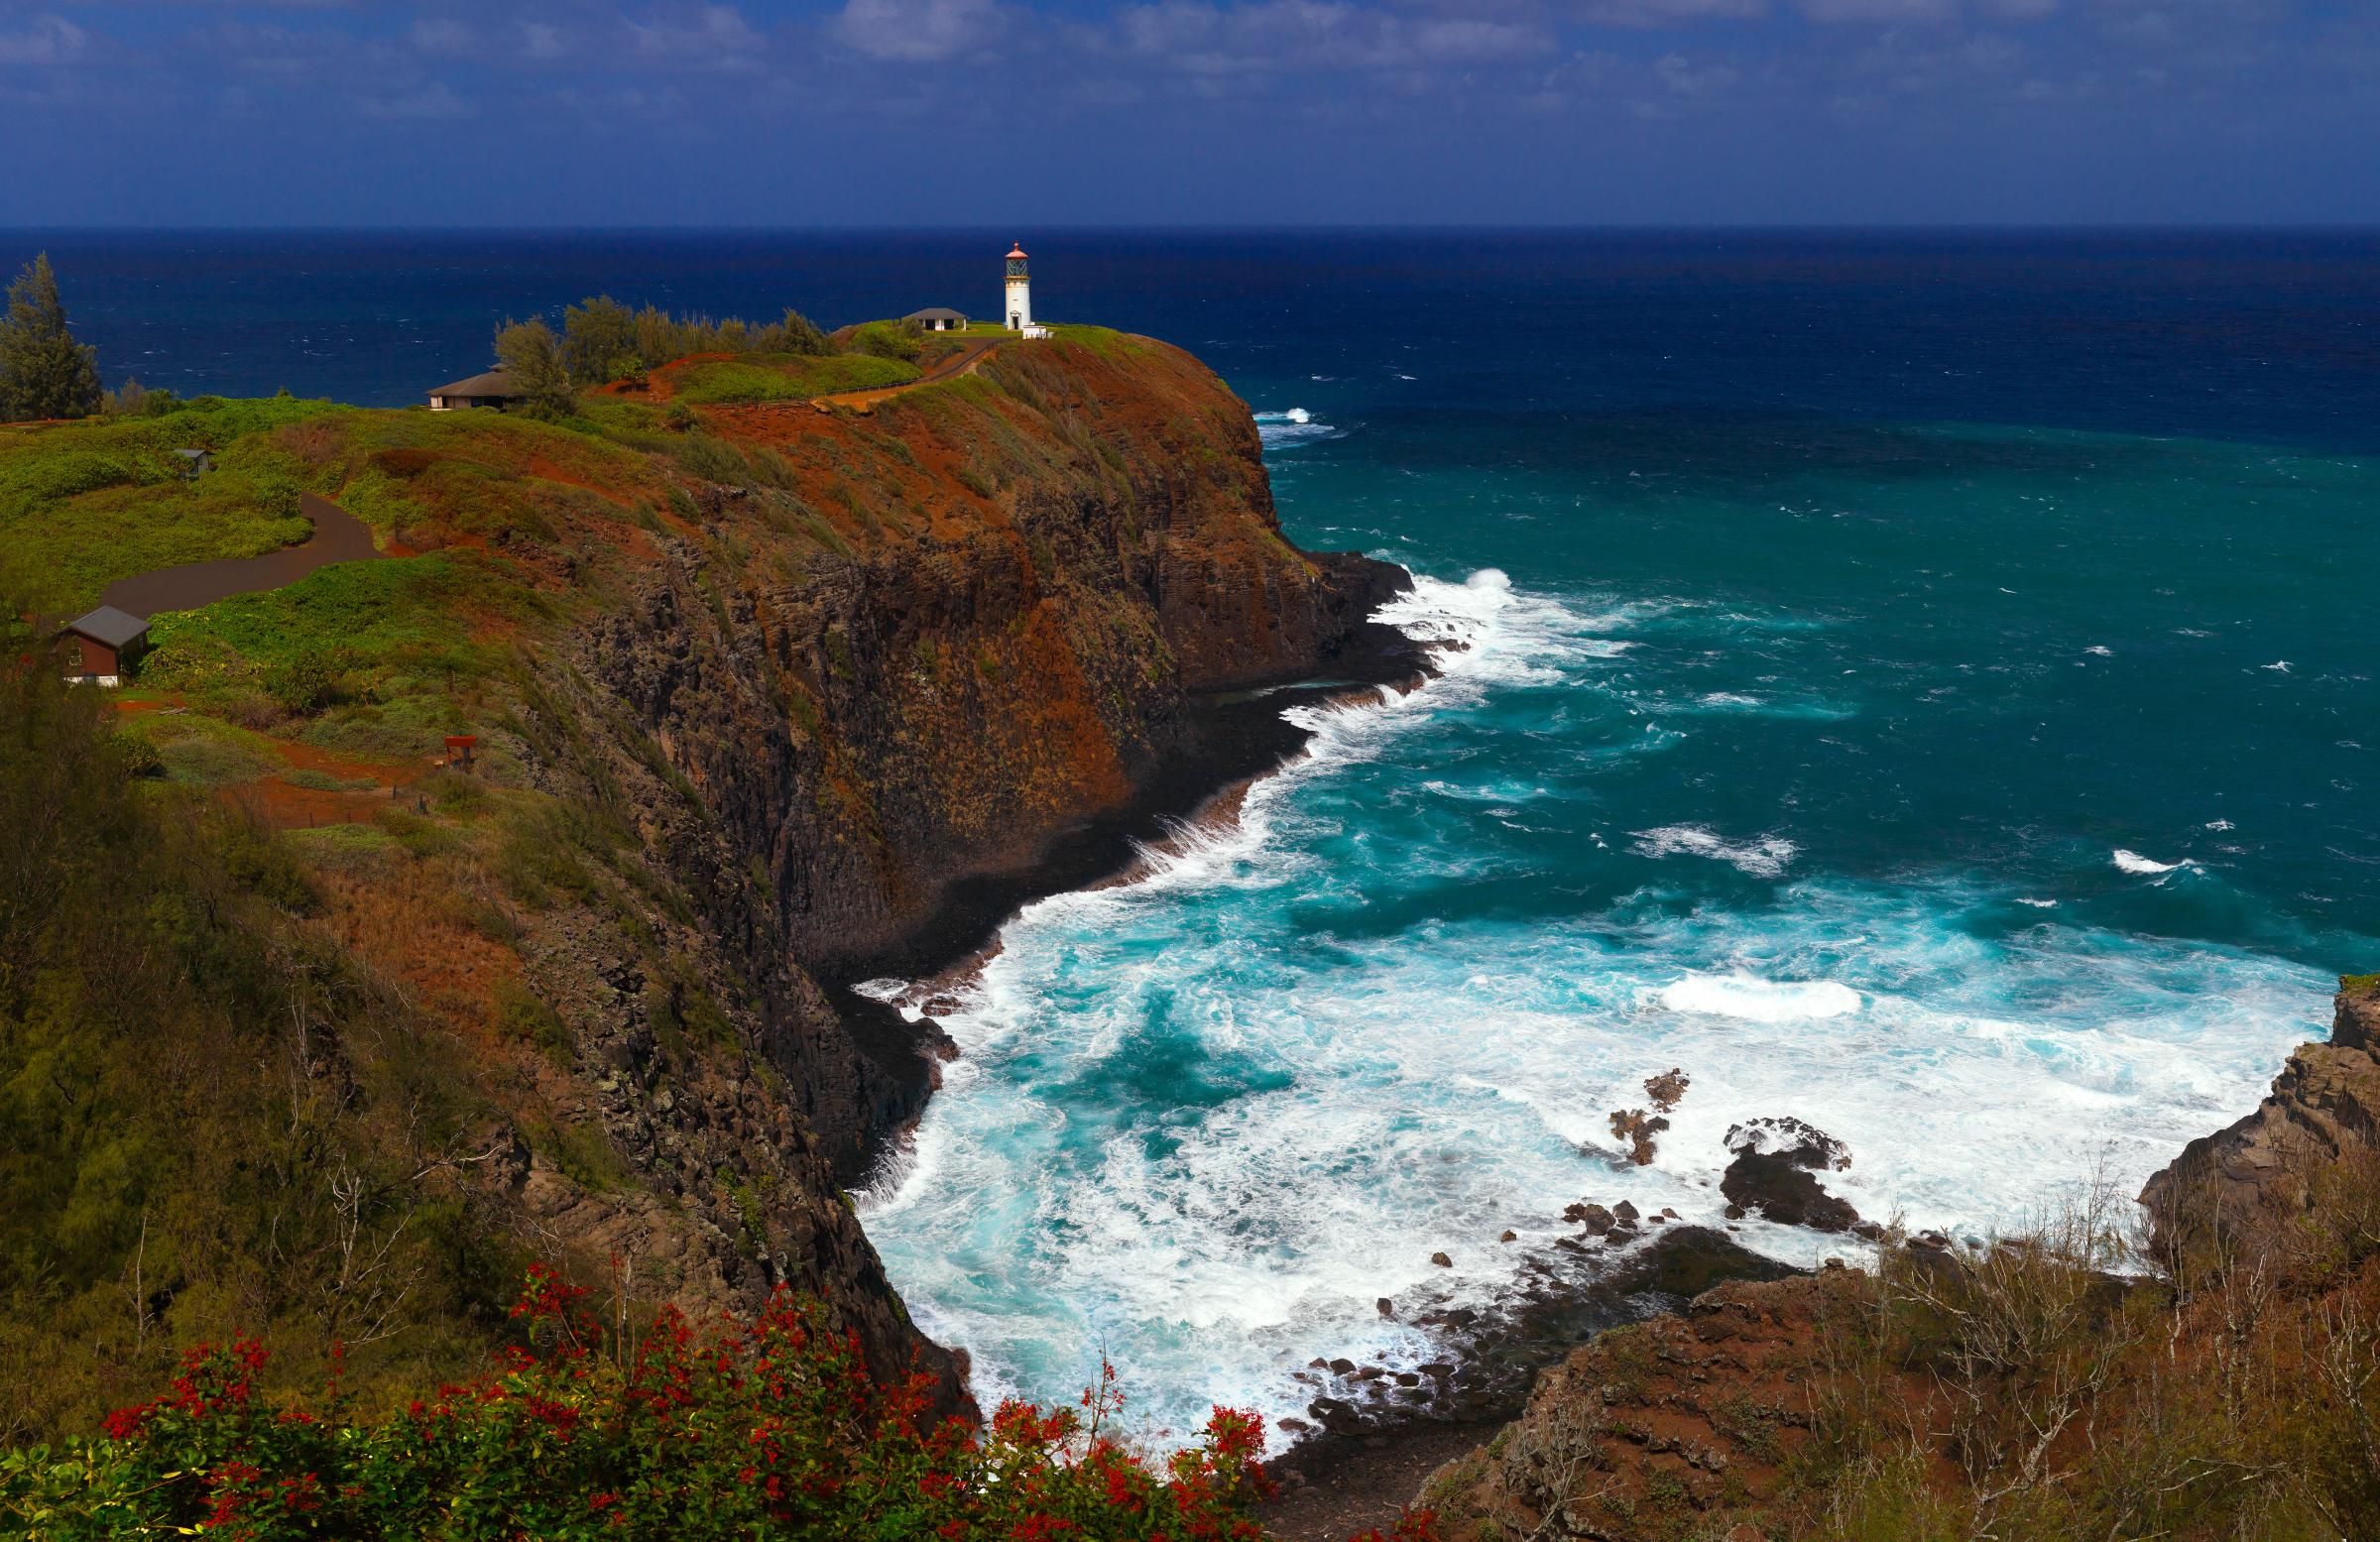 Historic Kilauea lighthouse